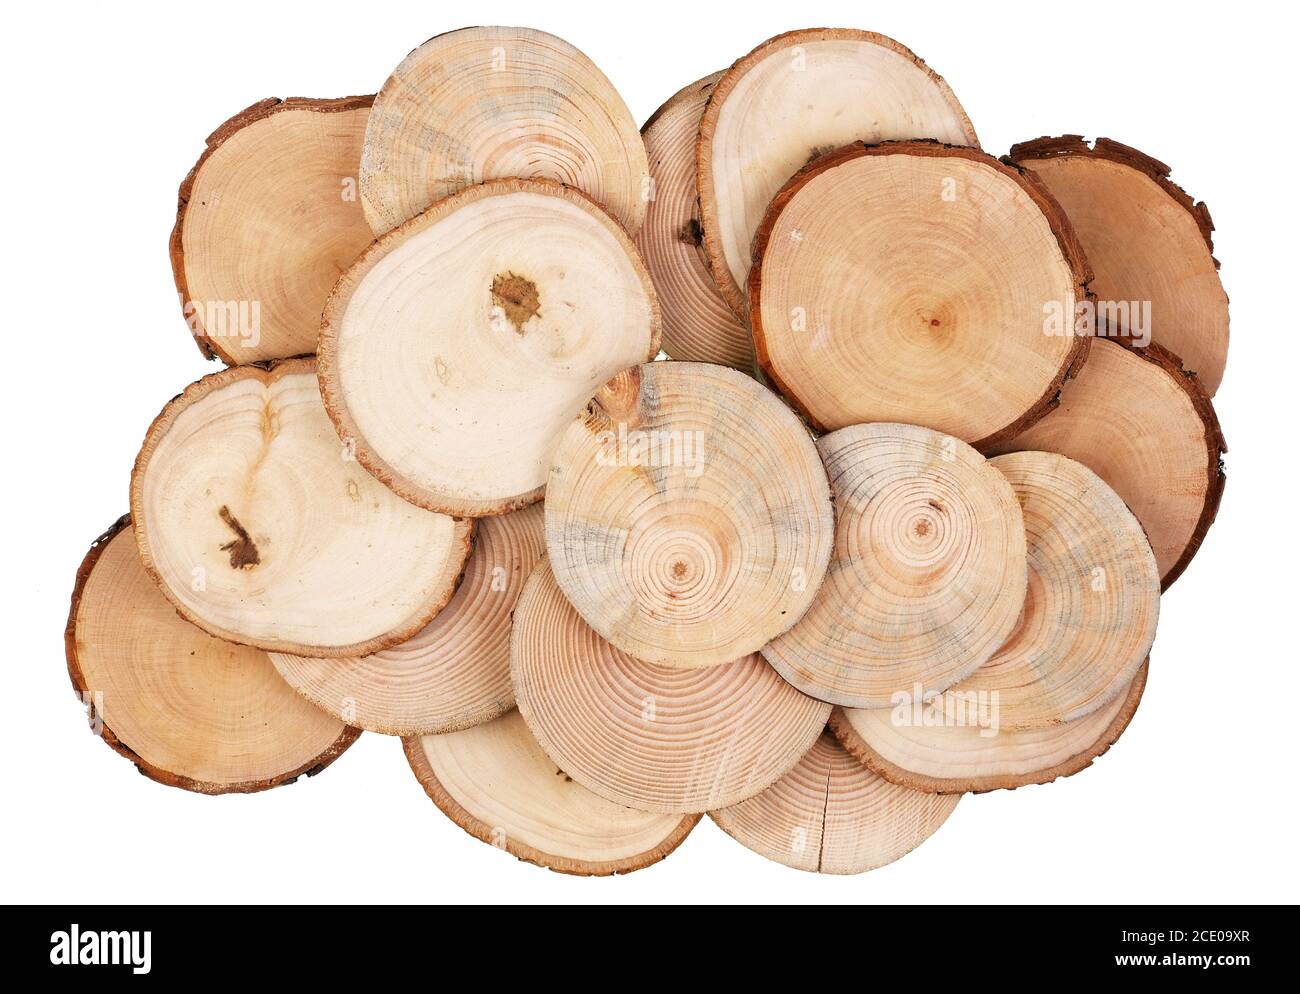 Coupes rondes de coupes de scie de diverses espèces de bois - bouleau, pomme, poire et pin ensemble isolé Banque D'Images